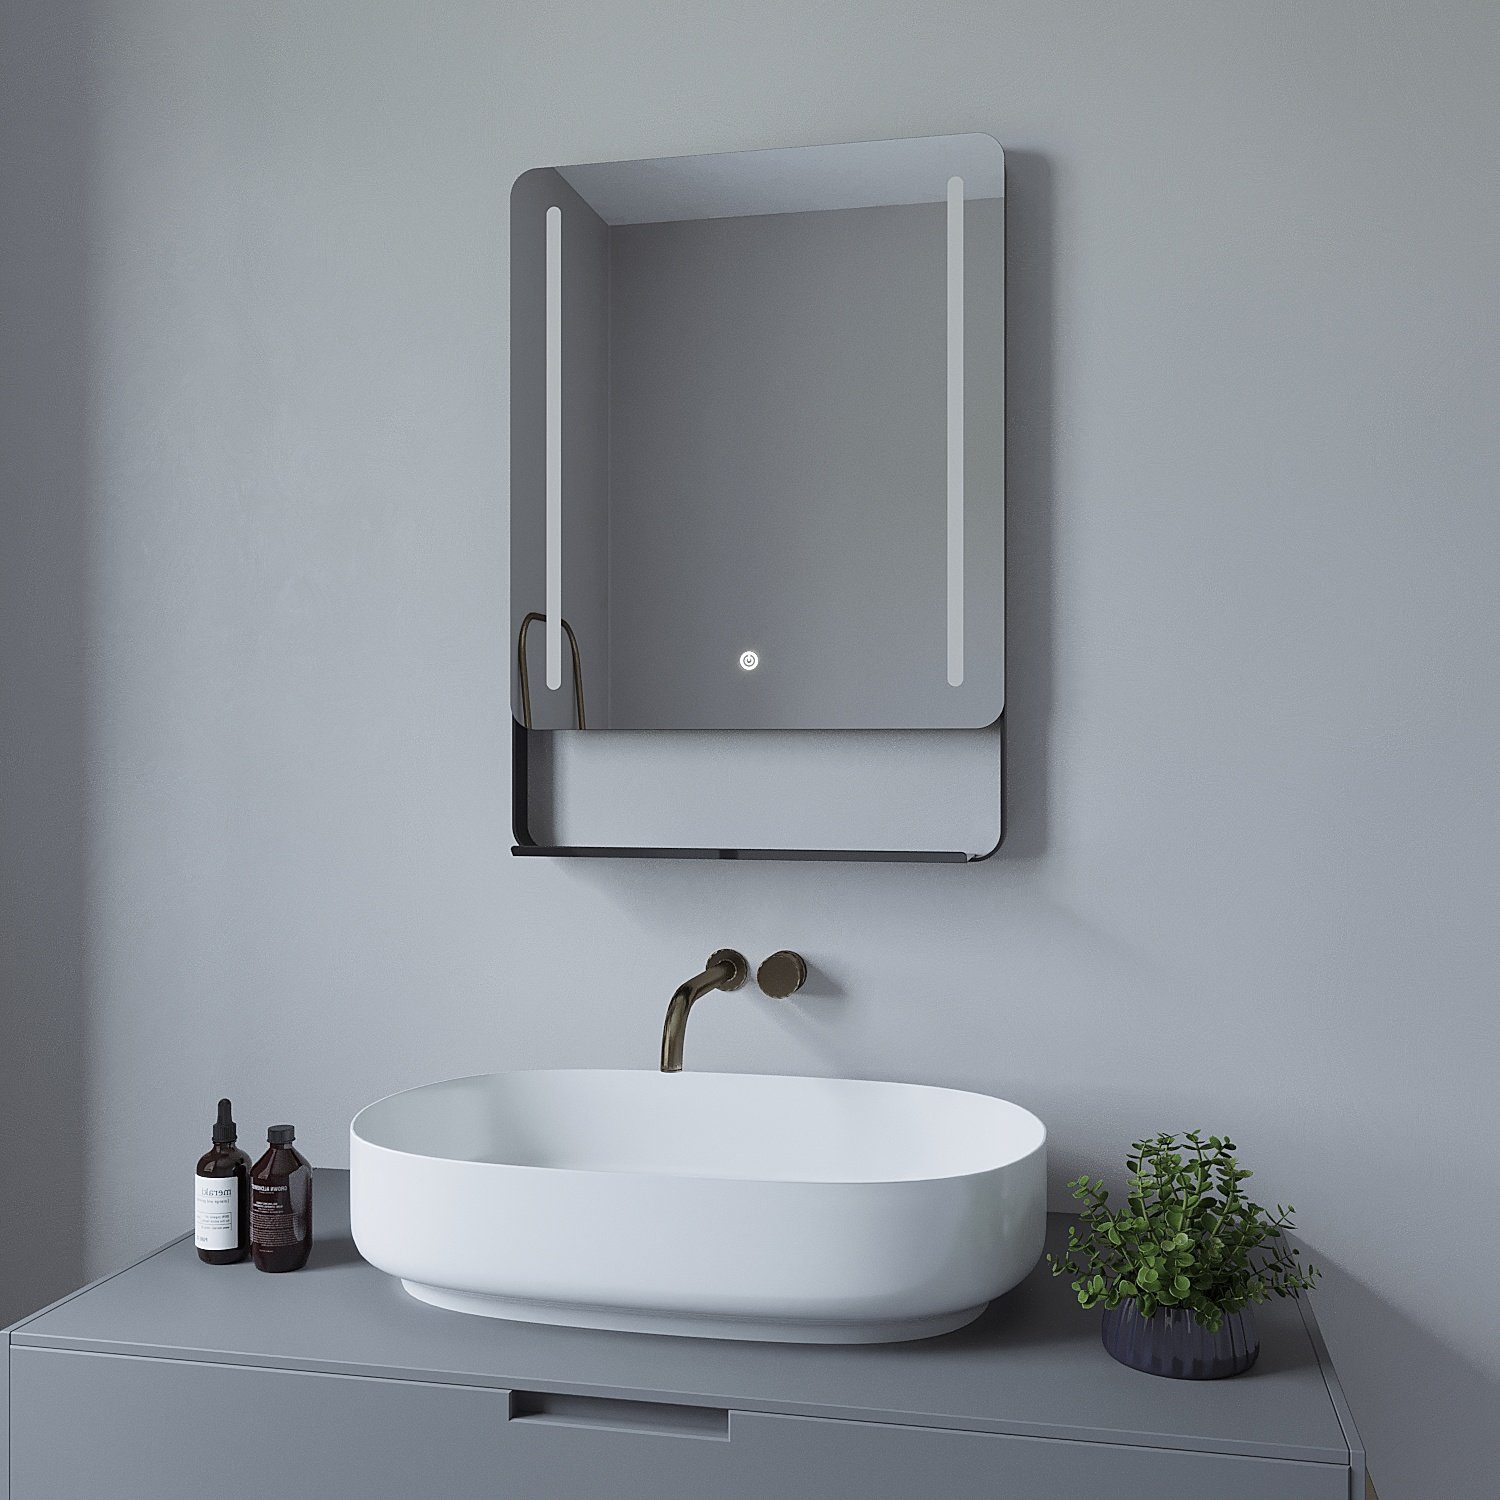 mit AQUABATOS Badezimmerspiegel Ablage 70x50cm, Beleuchtung Wandspiegel Badspiegel 80x60 beschlagfrei,Kaltweiß,energiesparend,dimmbar,Touch